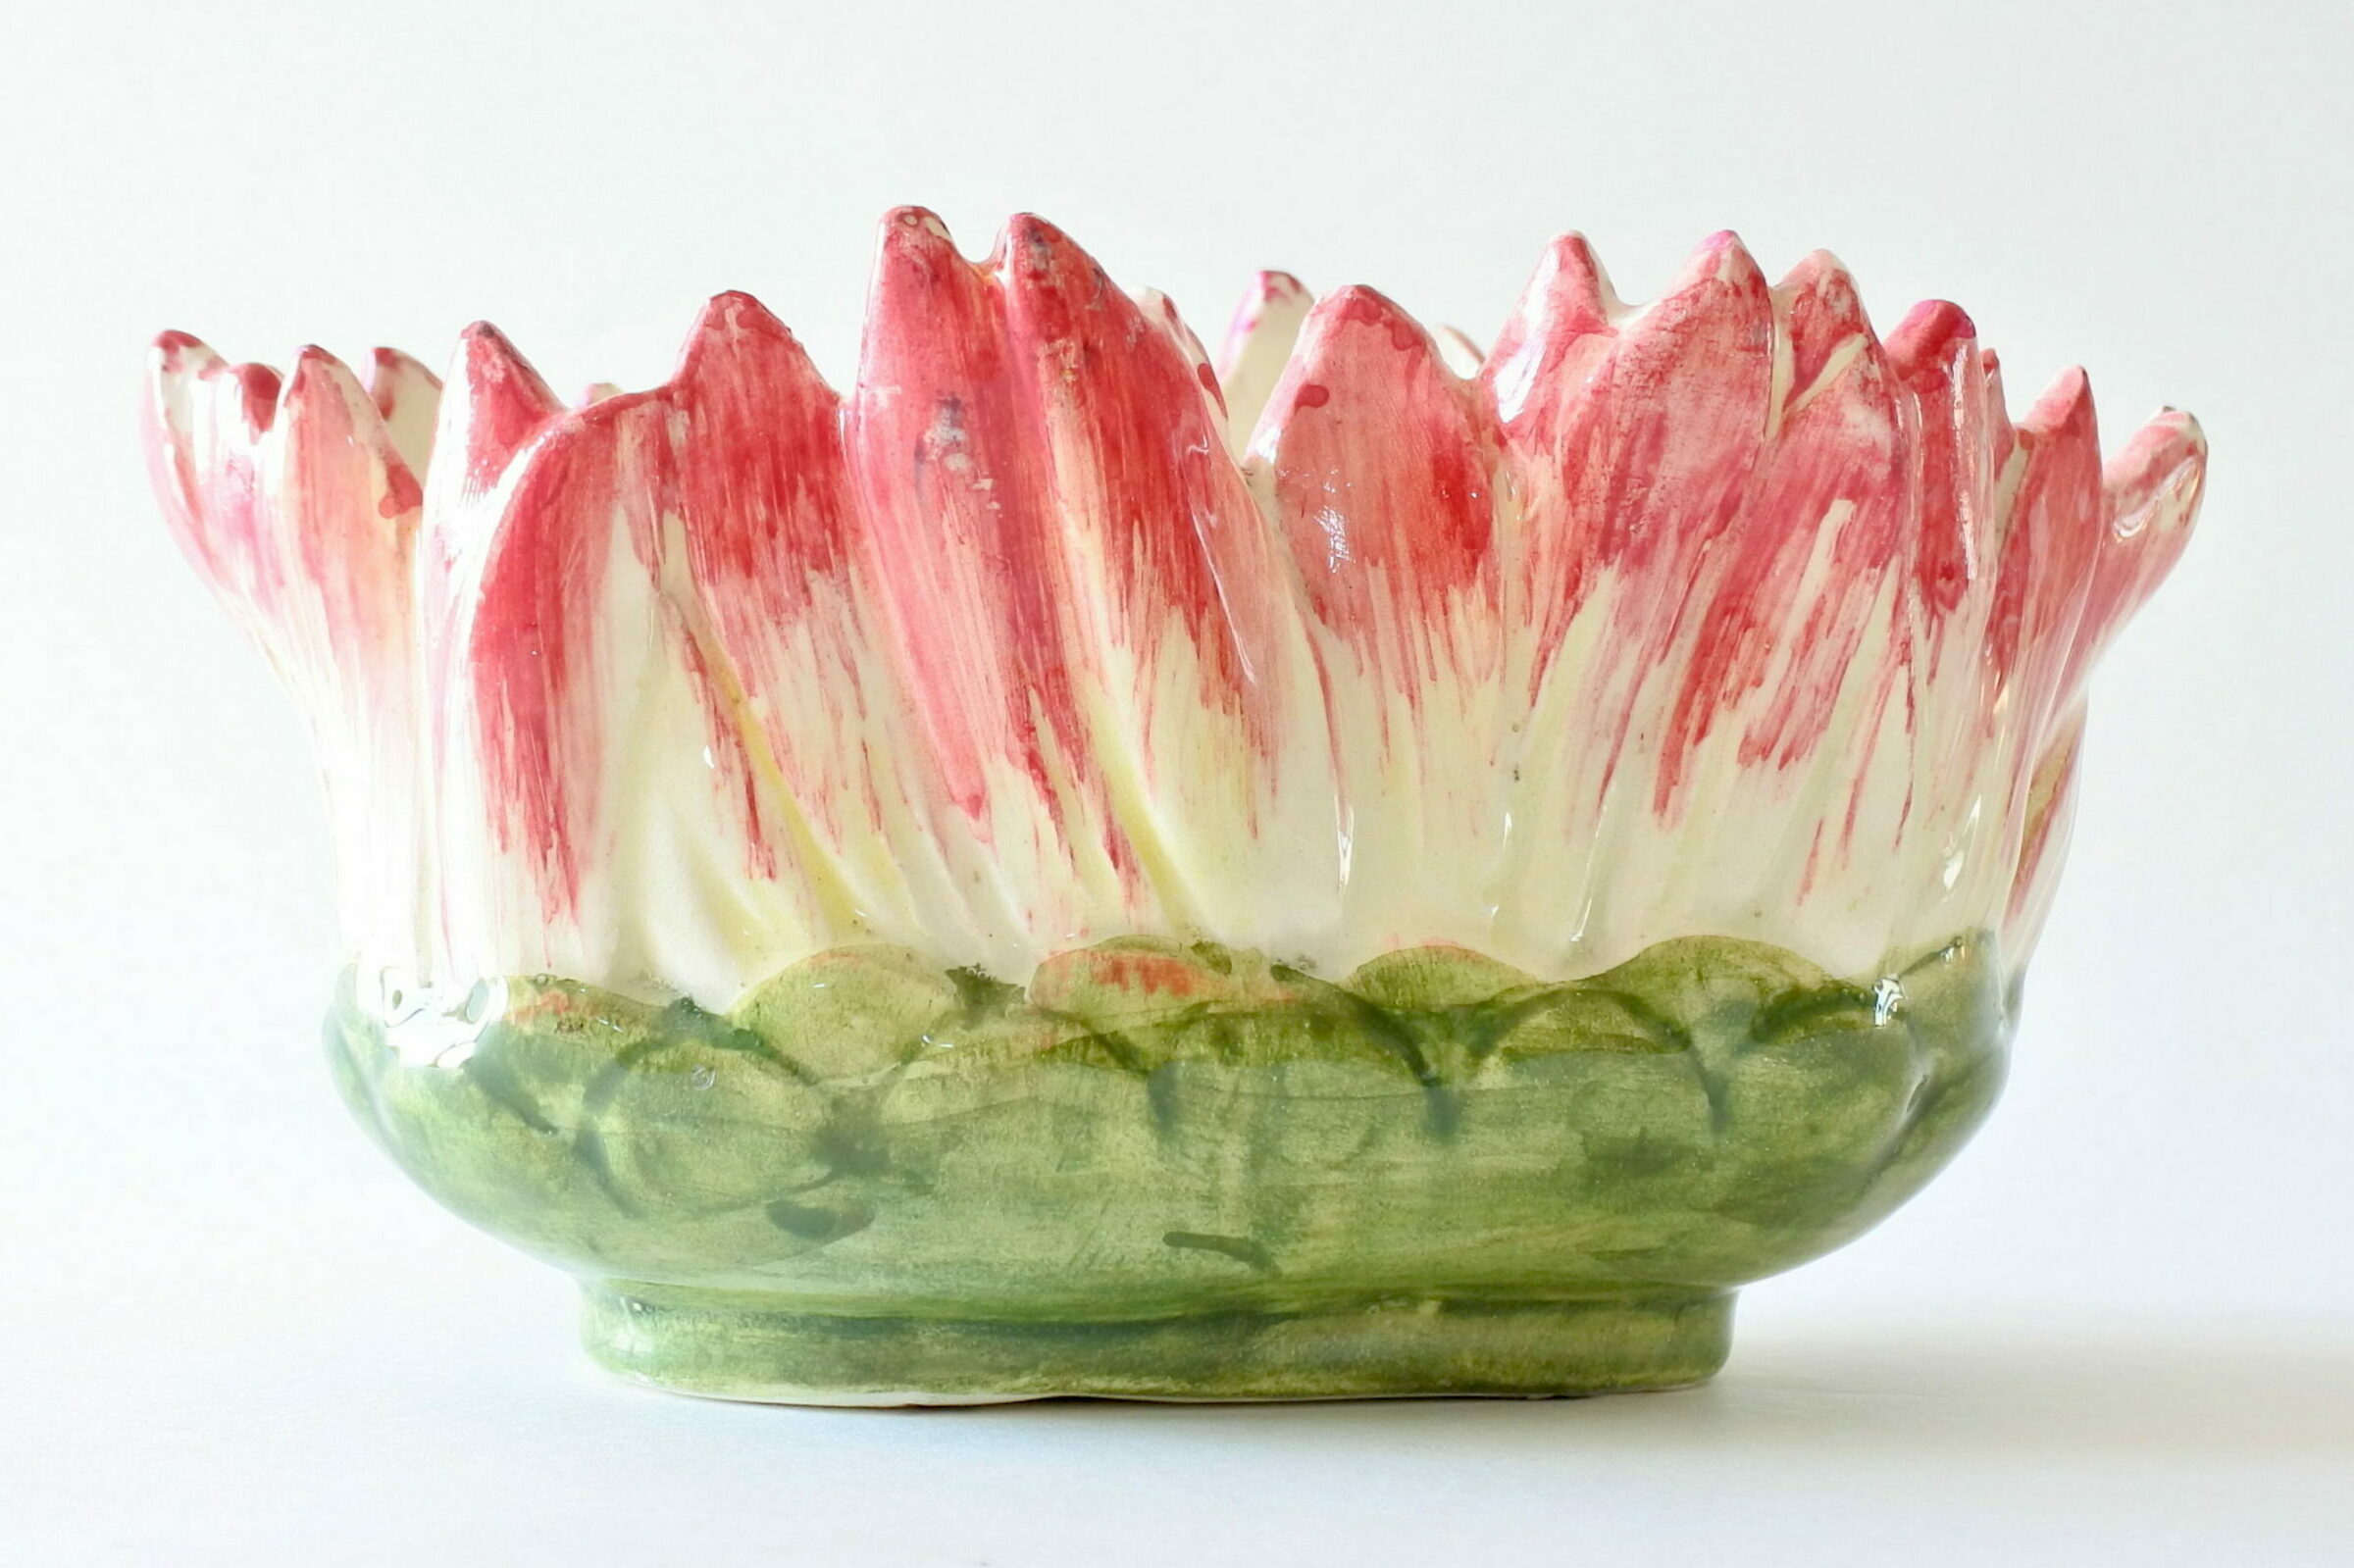 Piccola jardiniere Massier in ceramica barbotine con petali di dalia